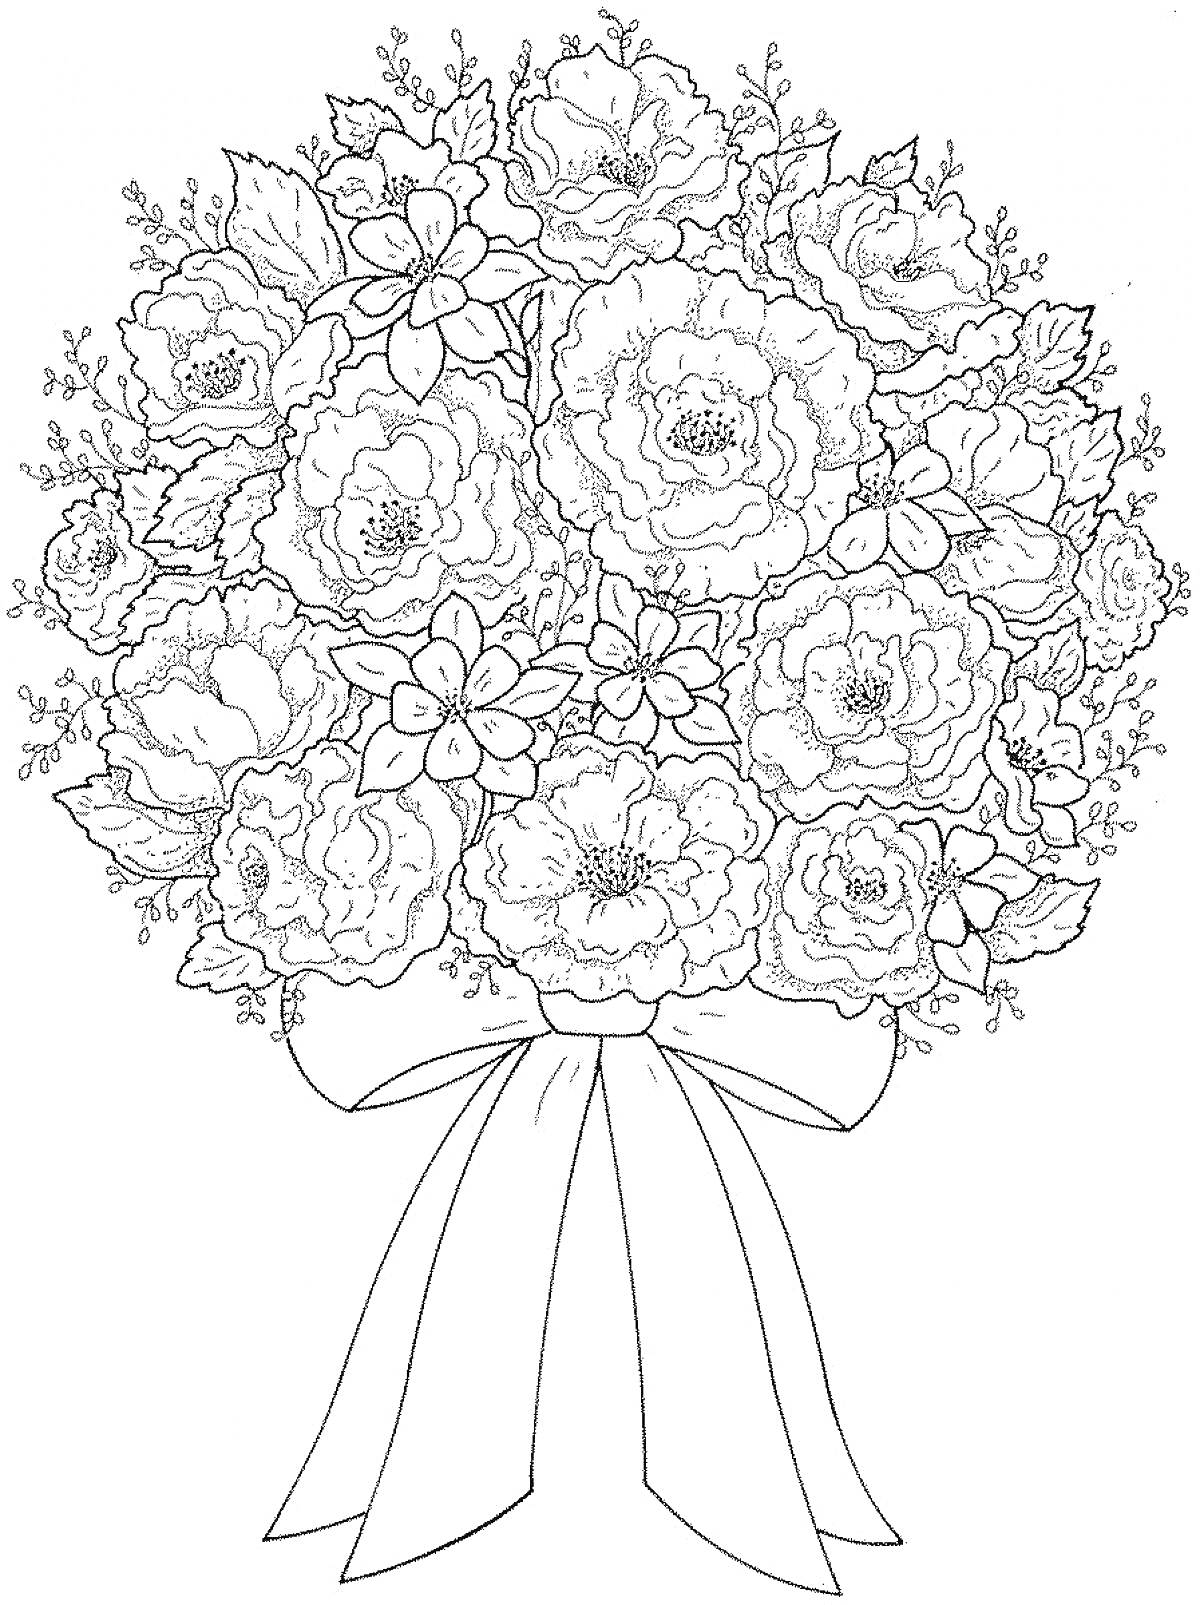 Раскраска Букет цветов с розами, георгинами и лилиями, украшенный веточками зелени и перевязанный ленточкой